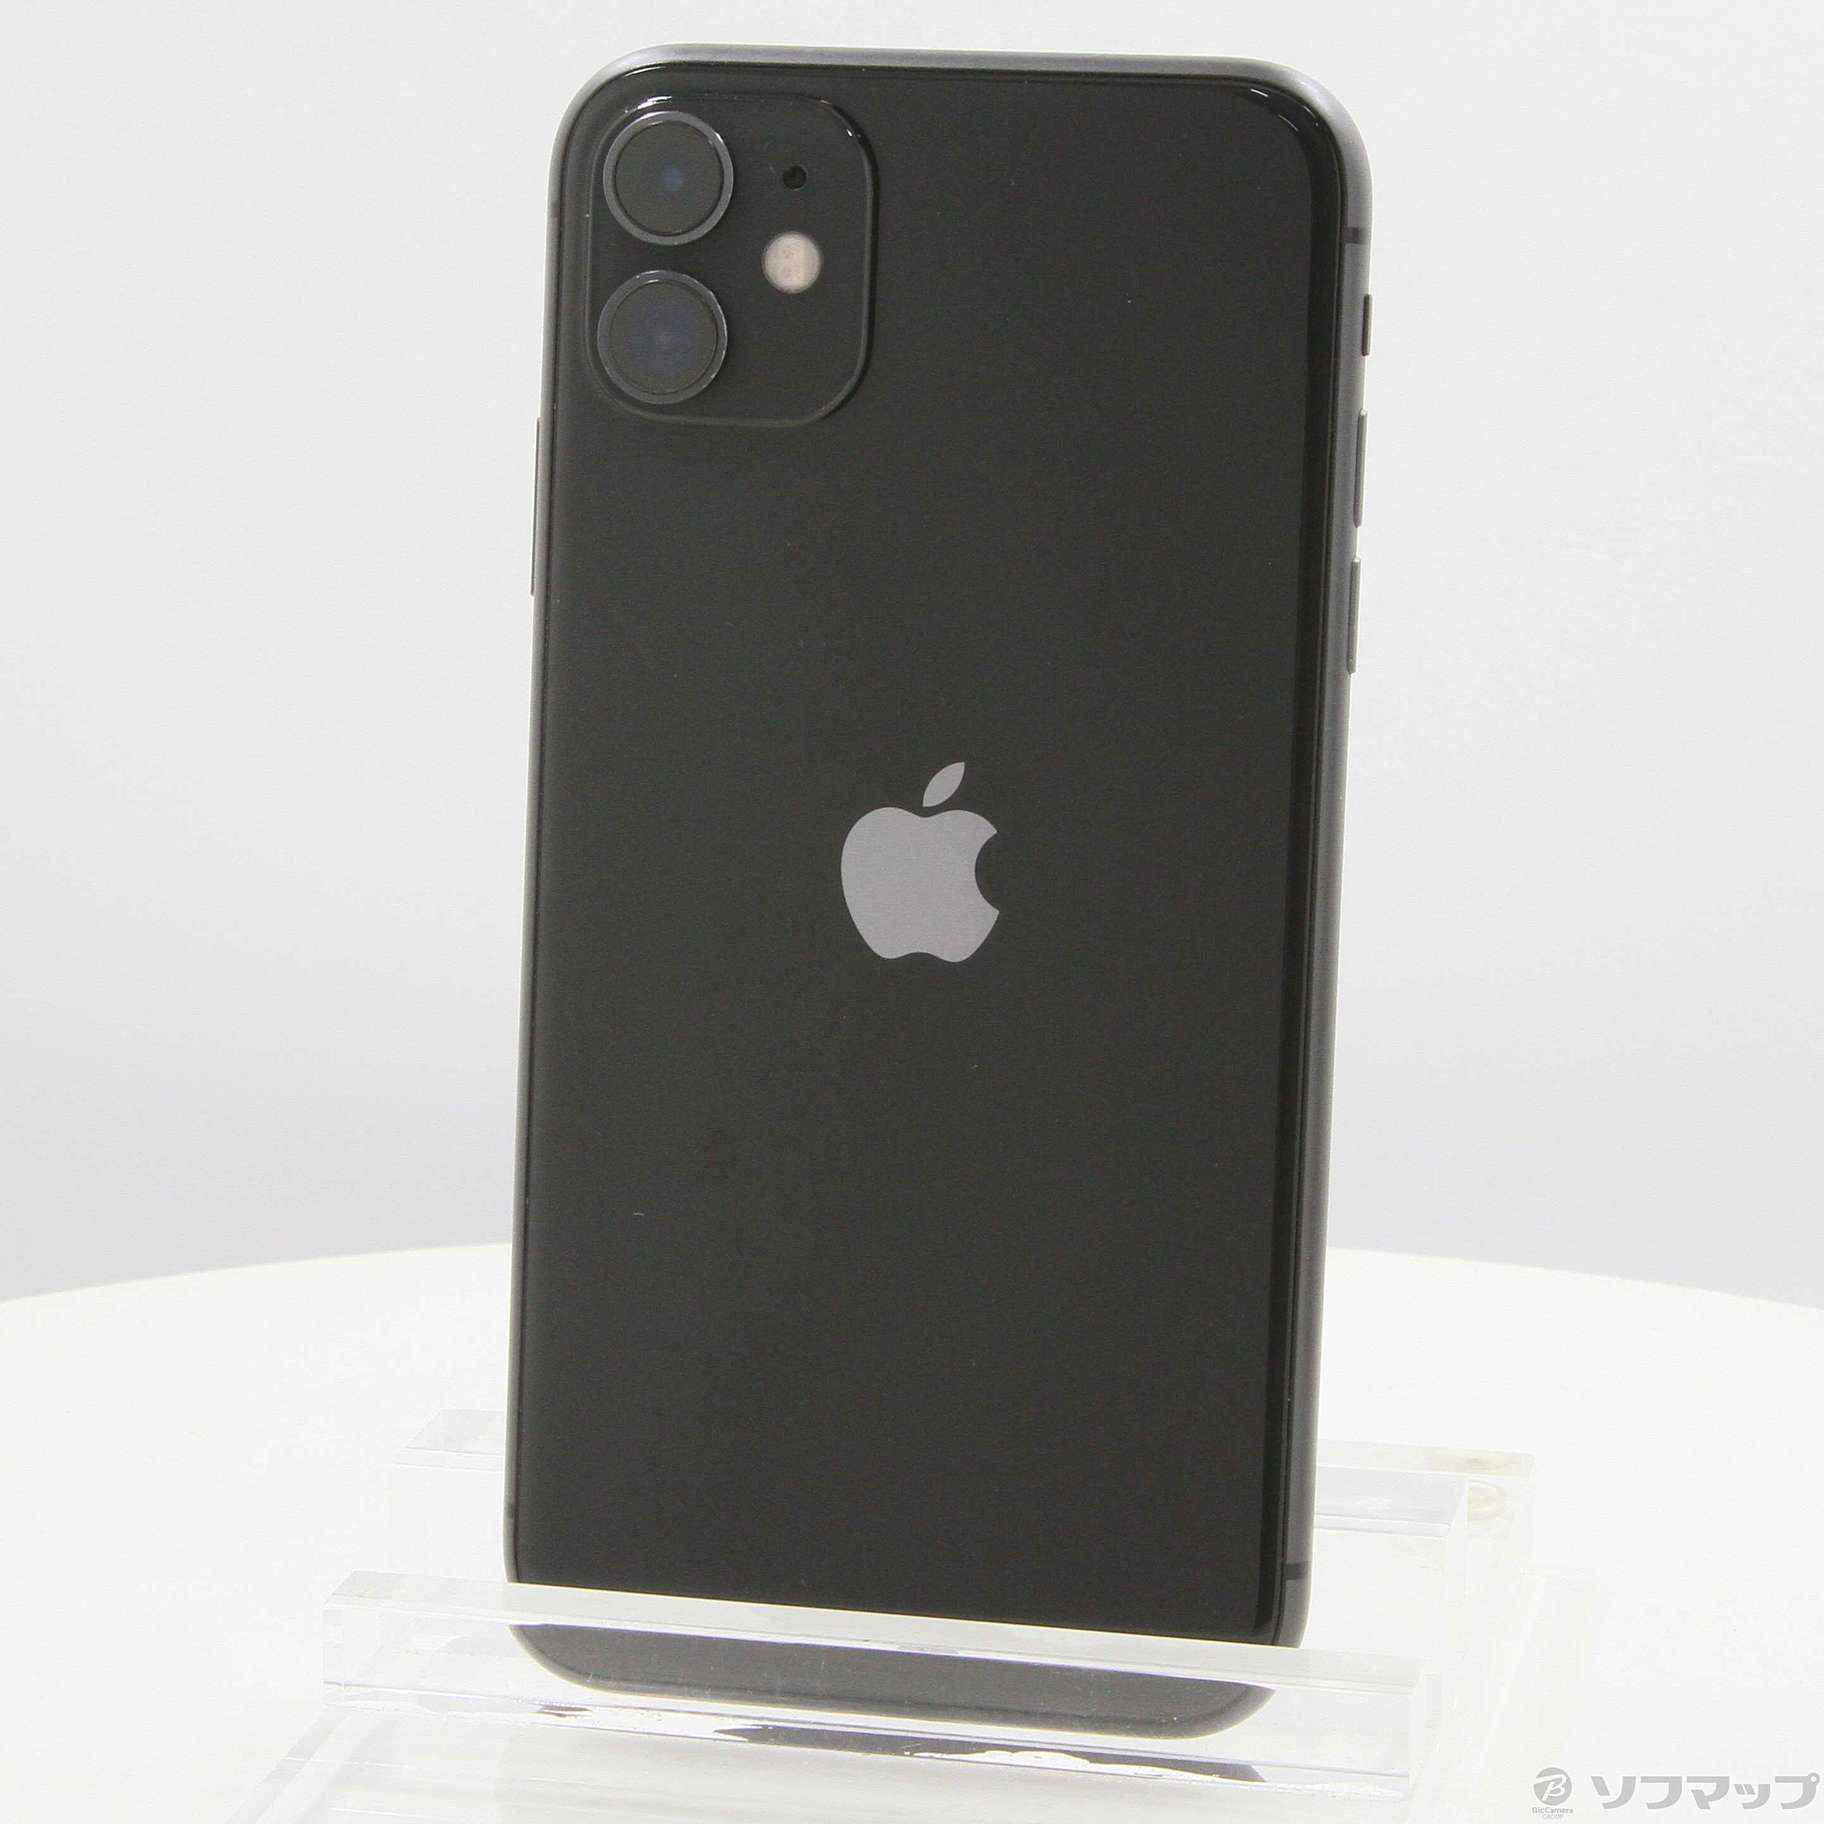 【美品・完動品】iPhone 11 ブラック 128GB SIMフリー 黒